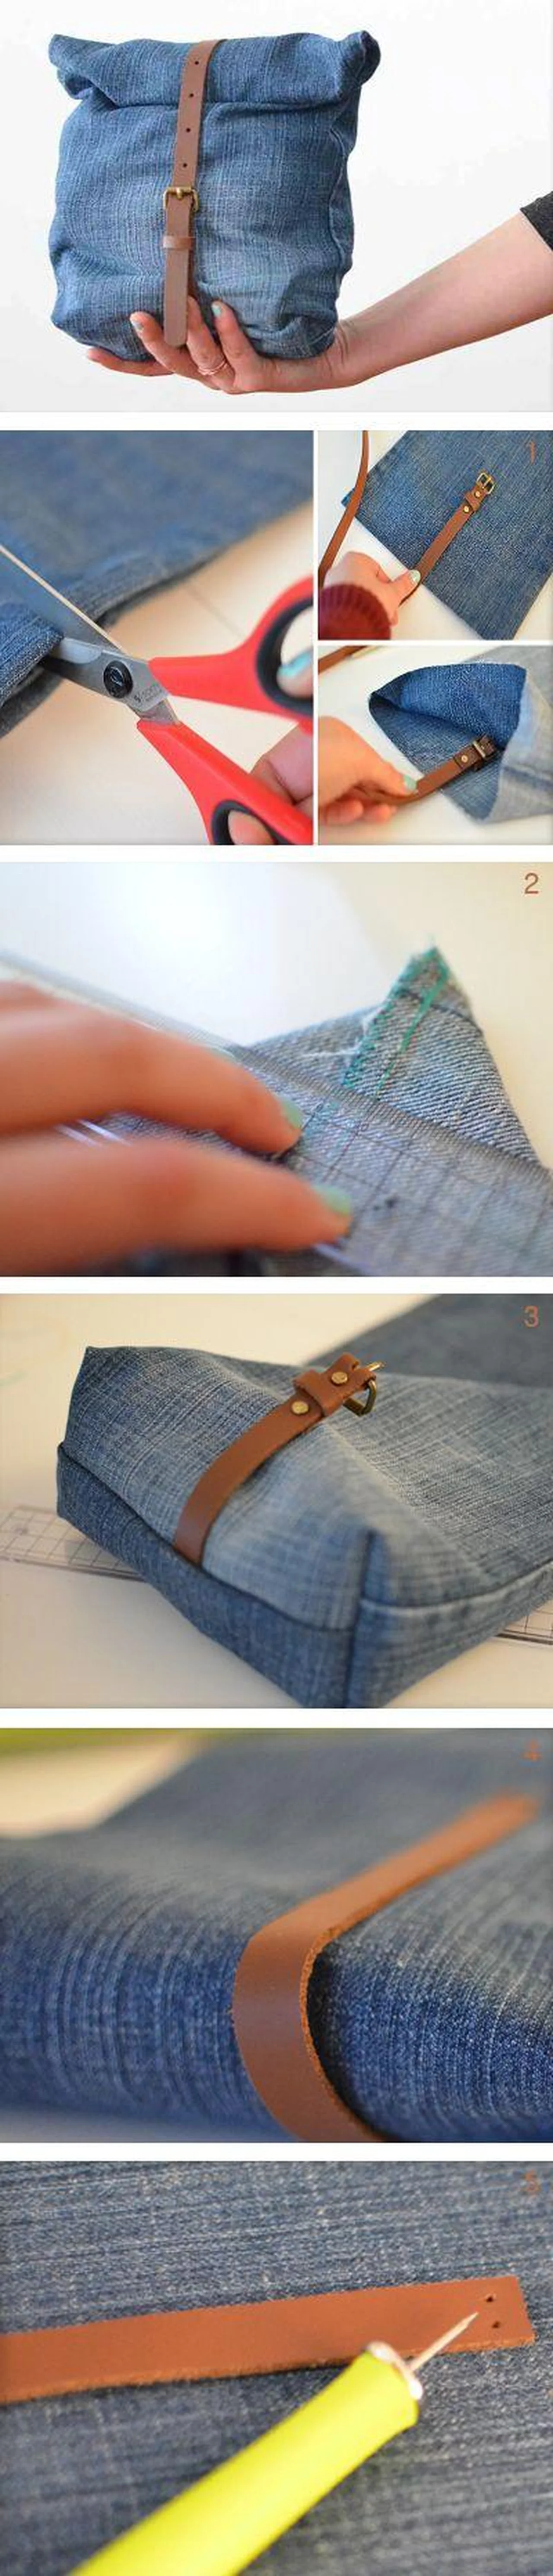 Elegancka torba z jeansu - instrukcja